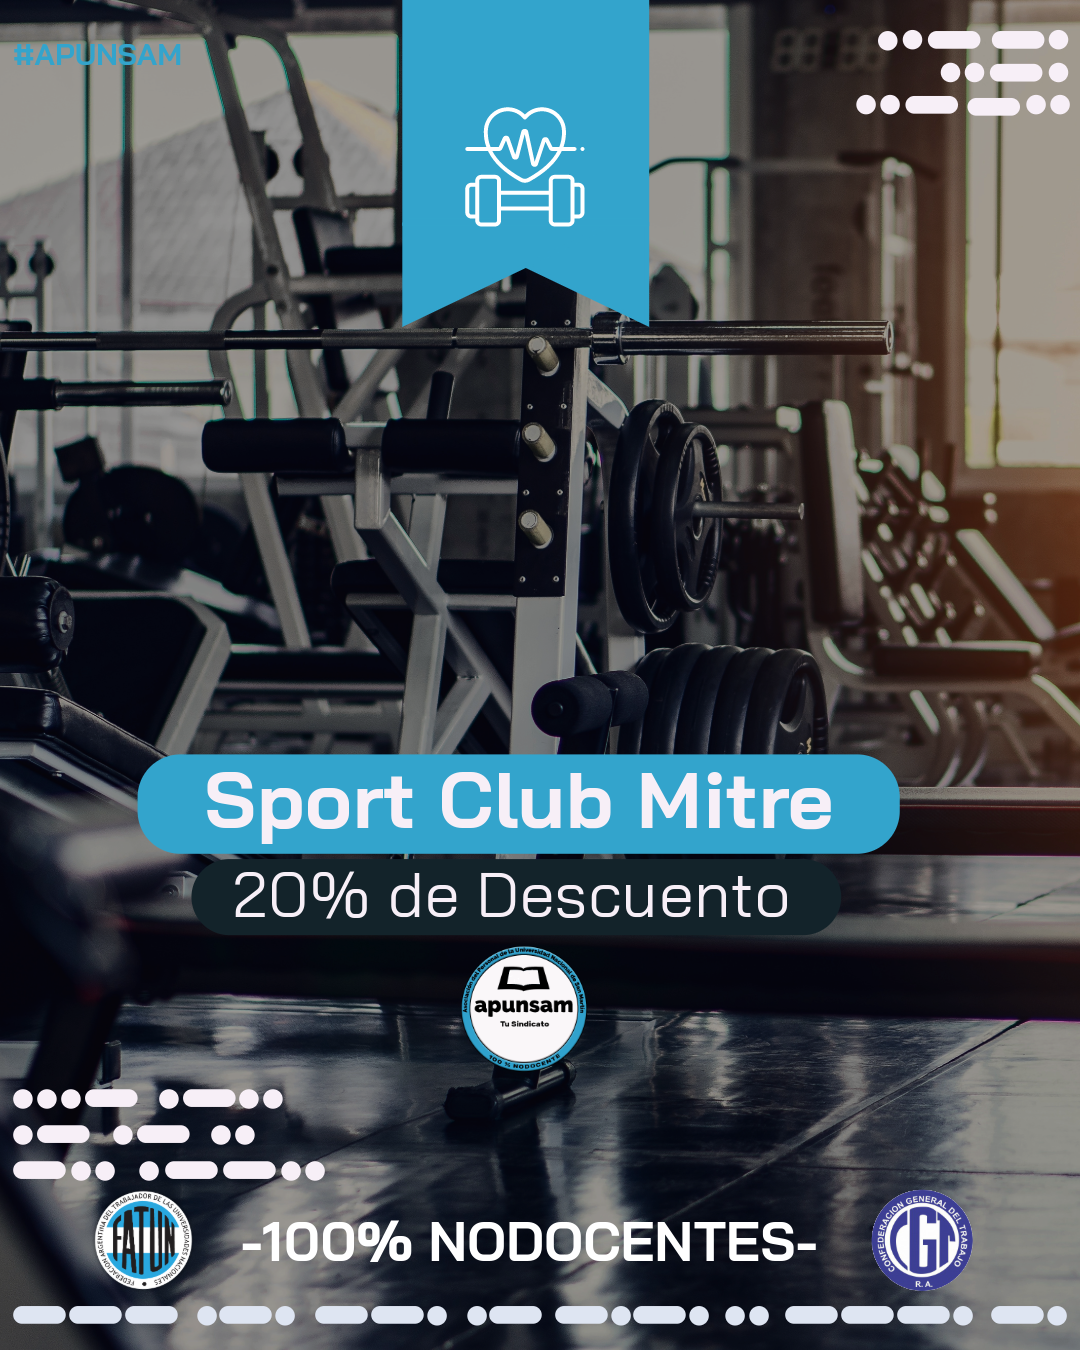 20% de Descuento en el Sport Club Mitre